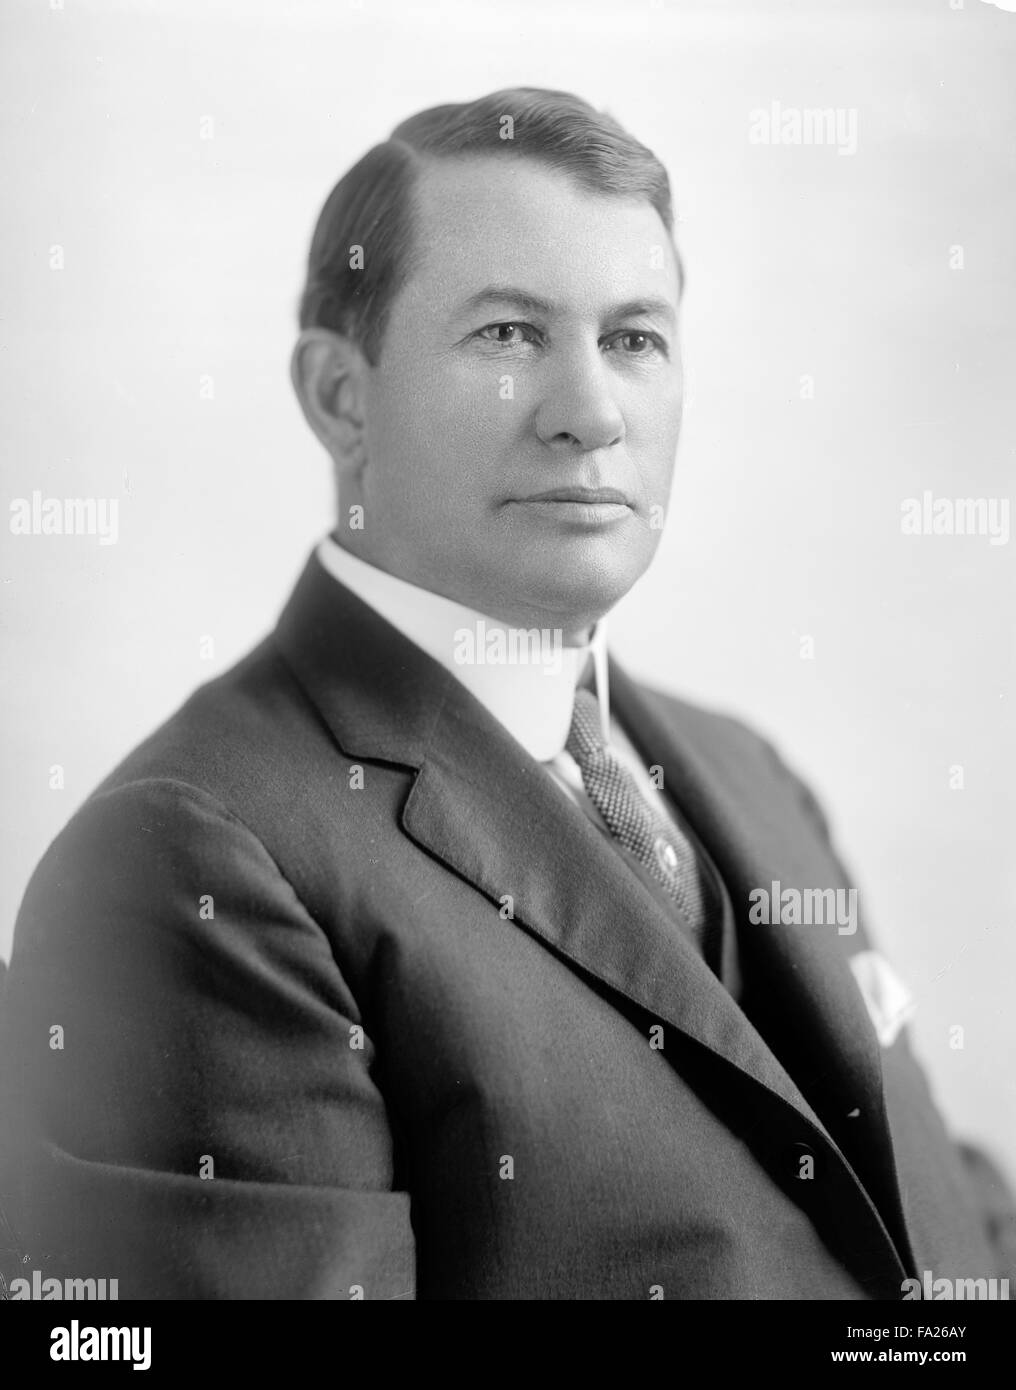 Alben W. Barkley, Alben William Barkley, raffigurato circa 1910-1930, 5° Vice Presidente degli Stati Uniti dal 1949 al 1953. Foto Stock